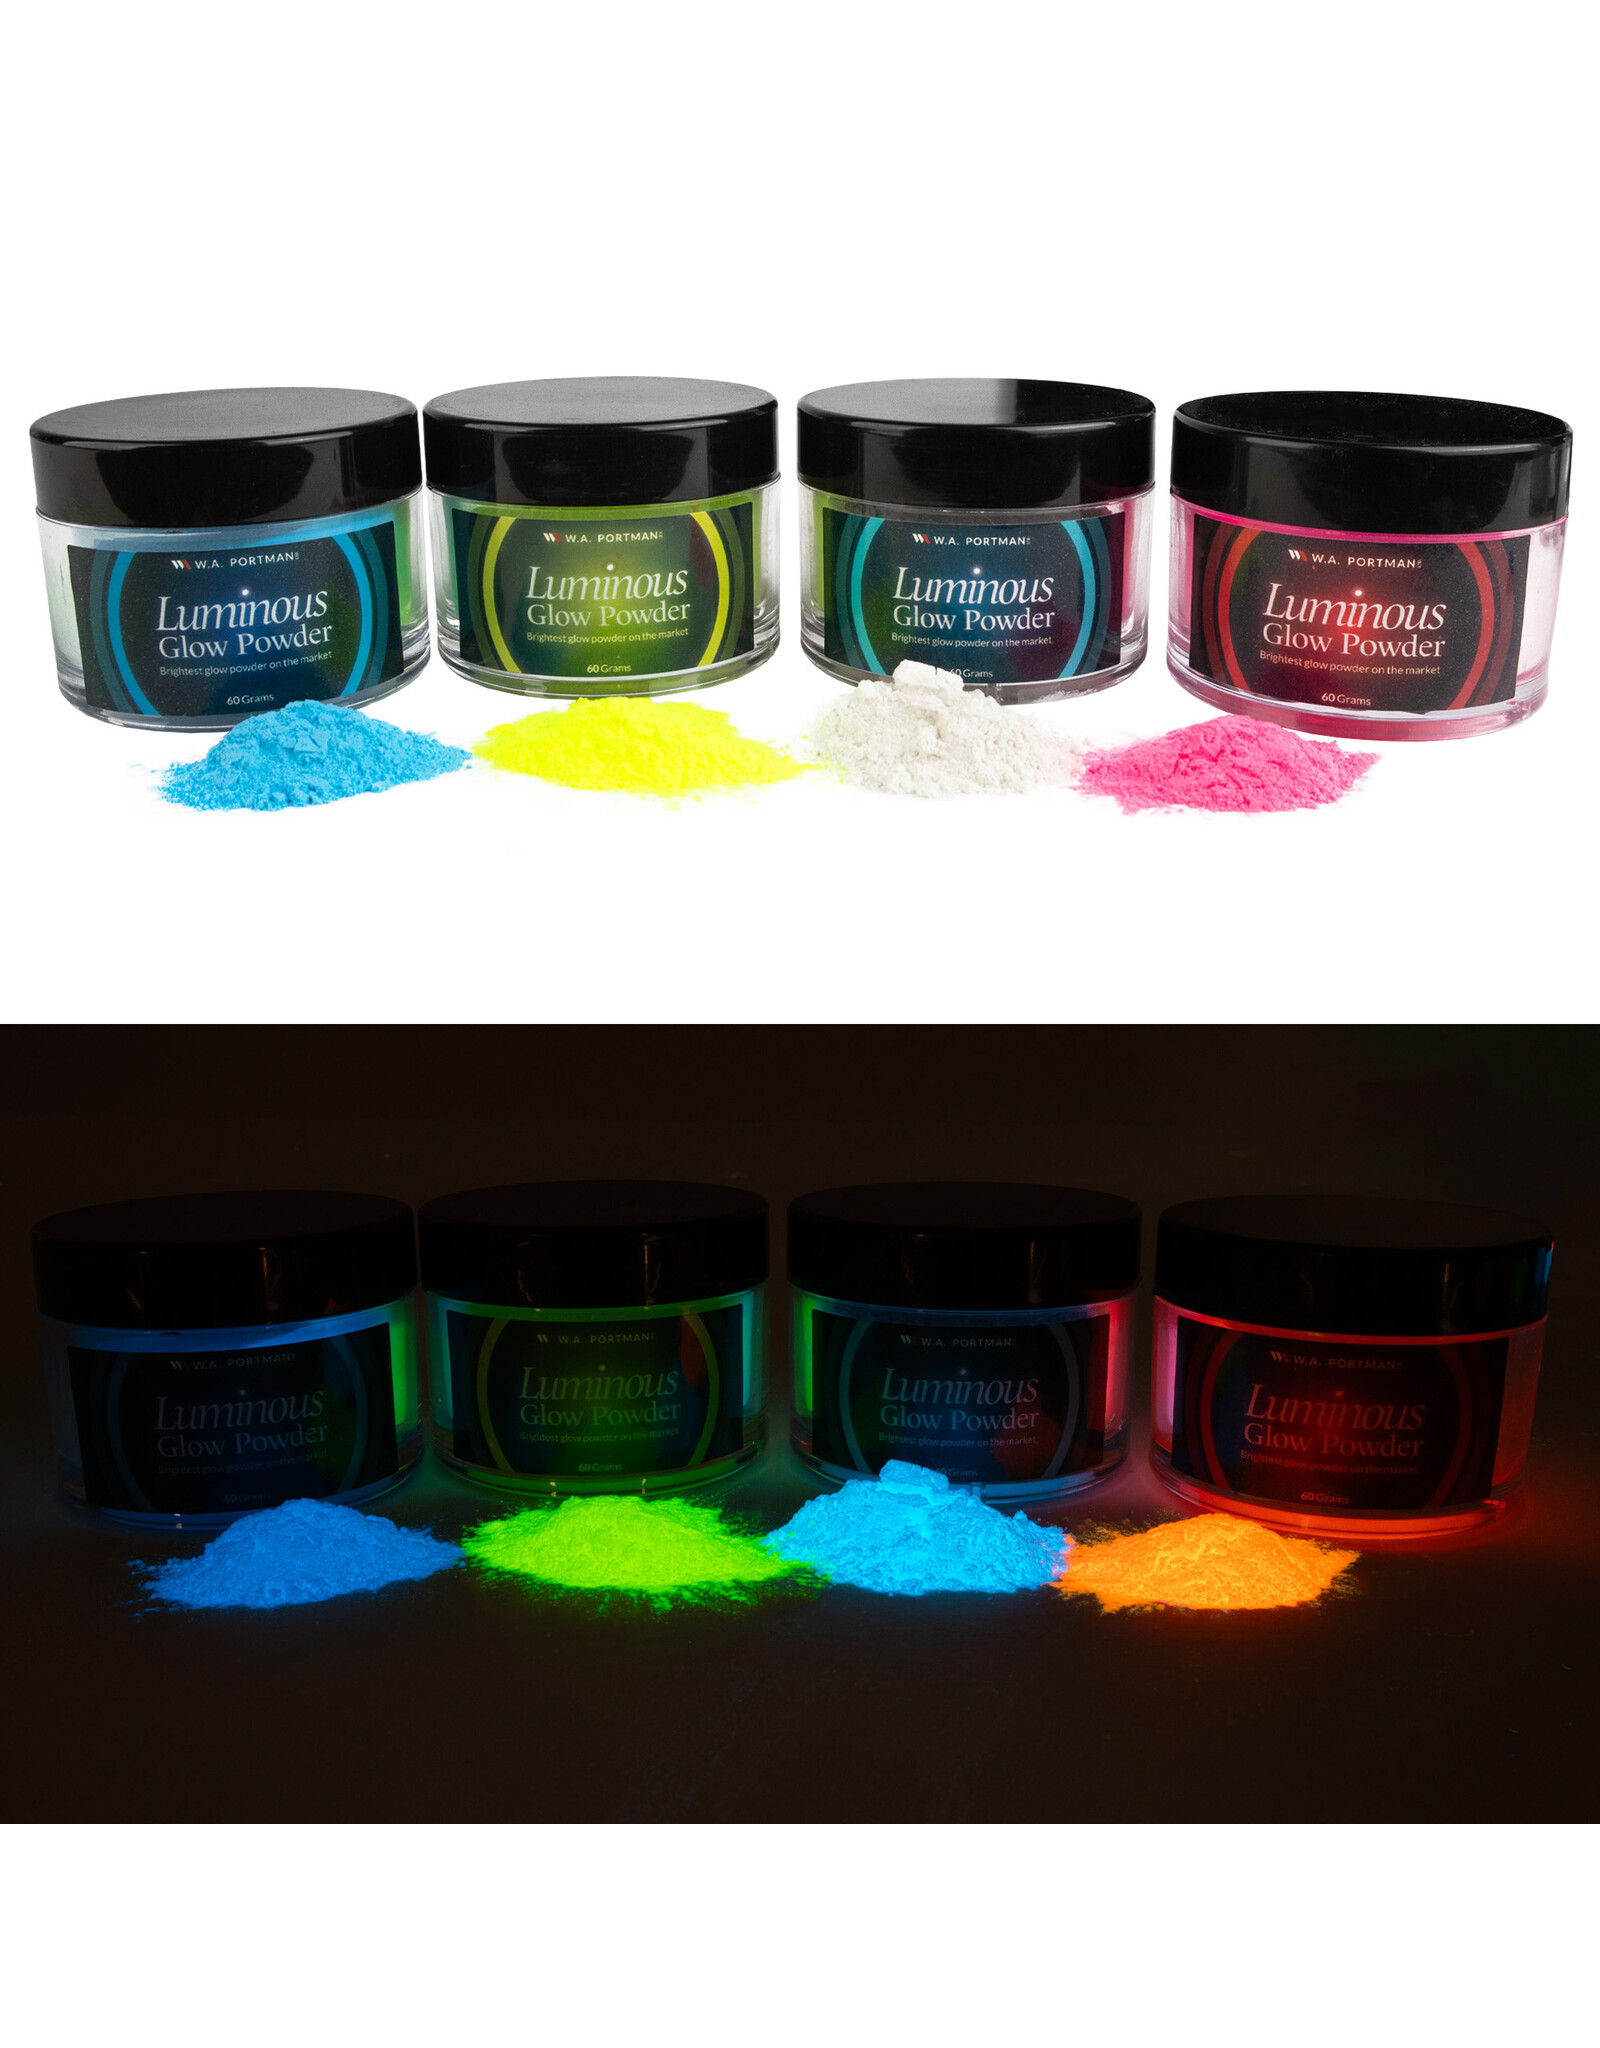 W.A. Portman WA Portman 4pk Luminous Glow Powder Kit